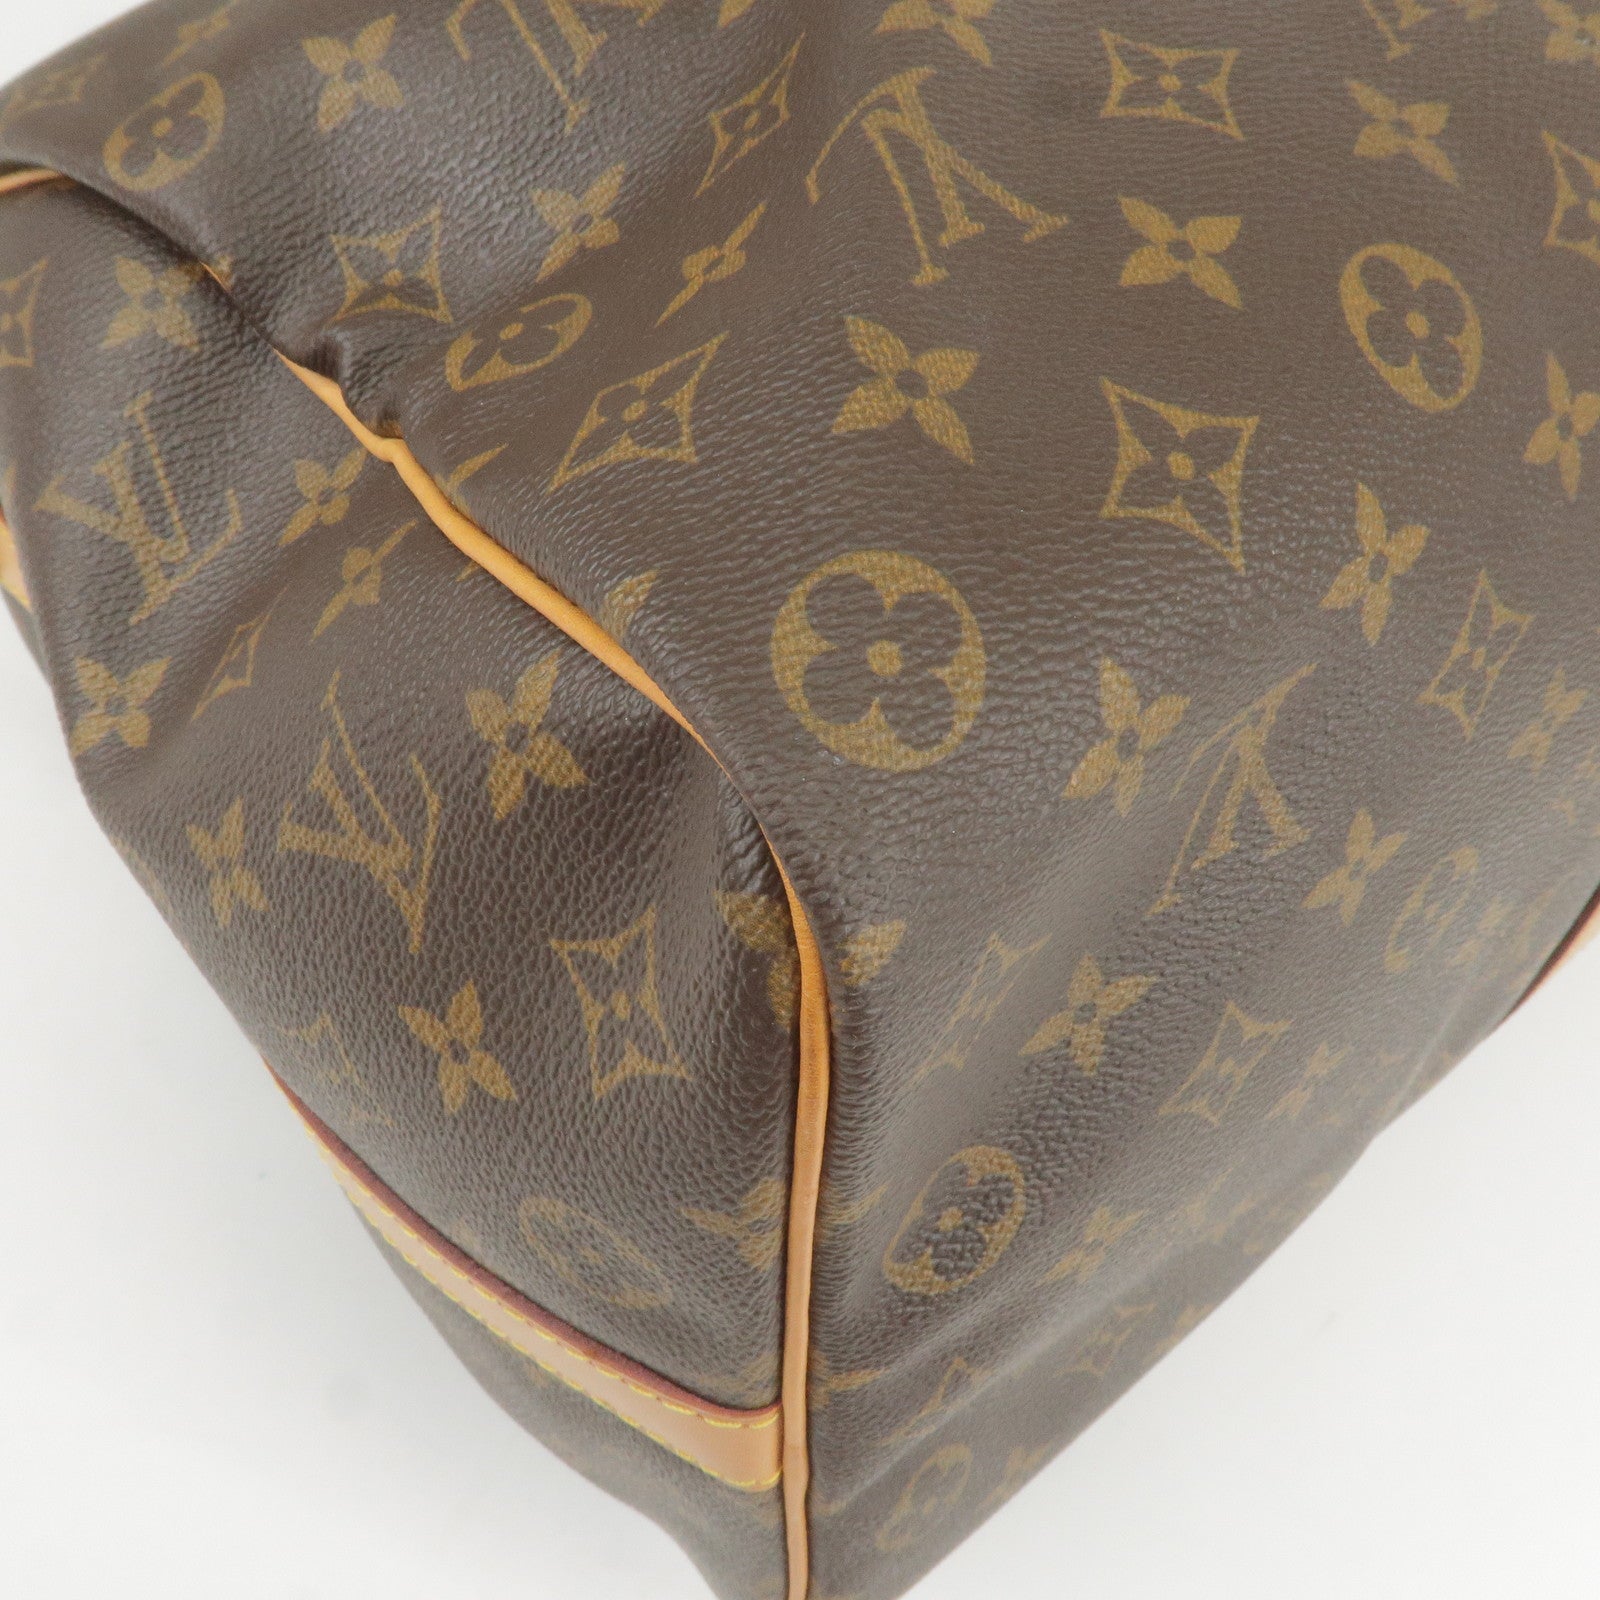 Louis Vuitton 1997 Pre-owned Pochette Accessoires Handbag - Brown